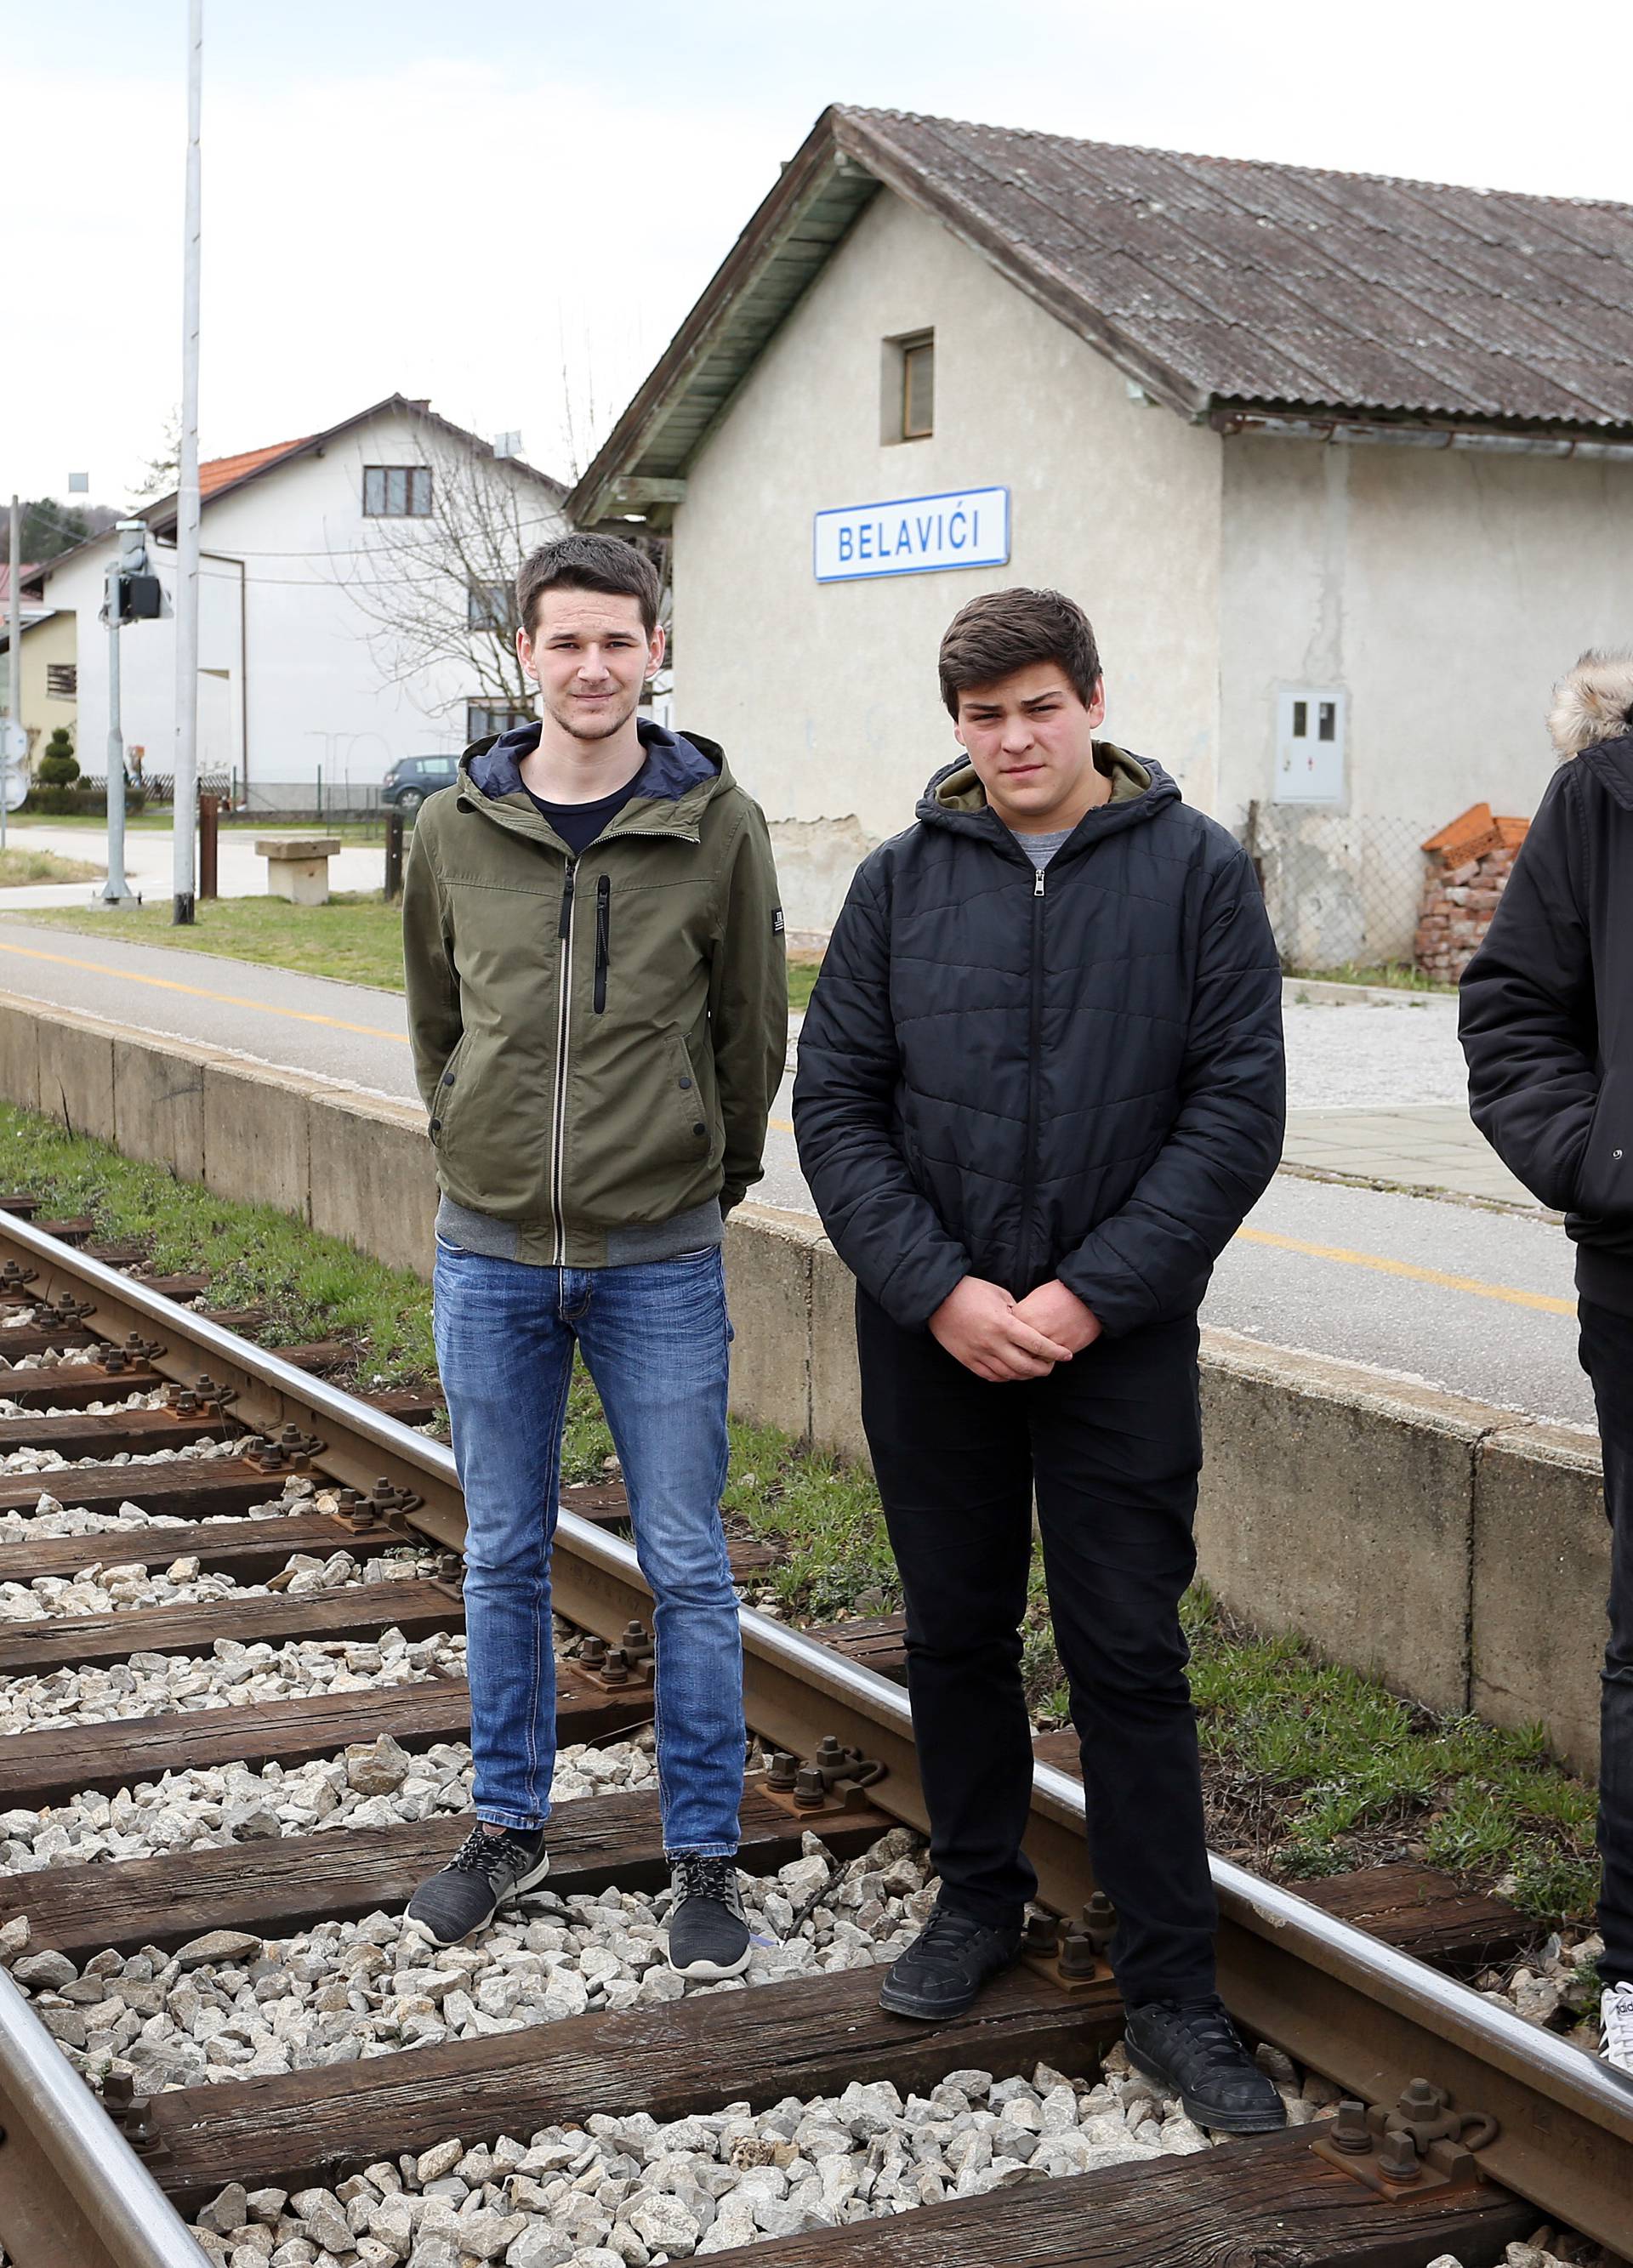 Heroji iz Belavića: U zadnji čas čovjeka spasili od naleta vlaka